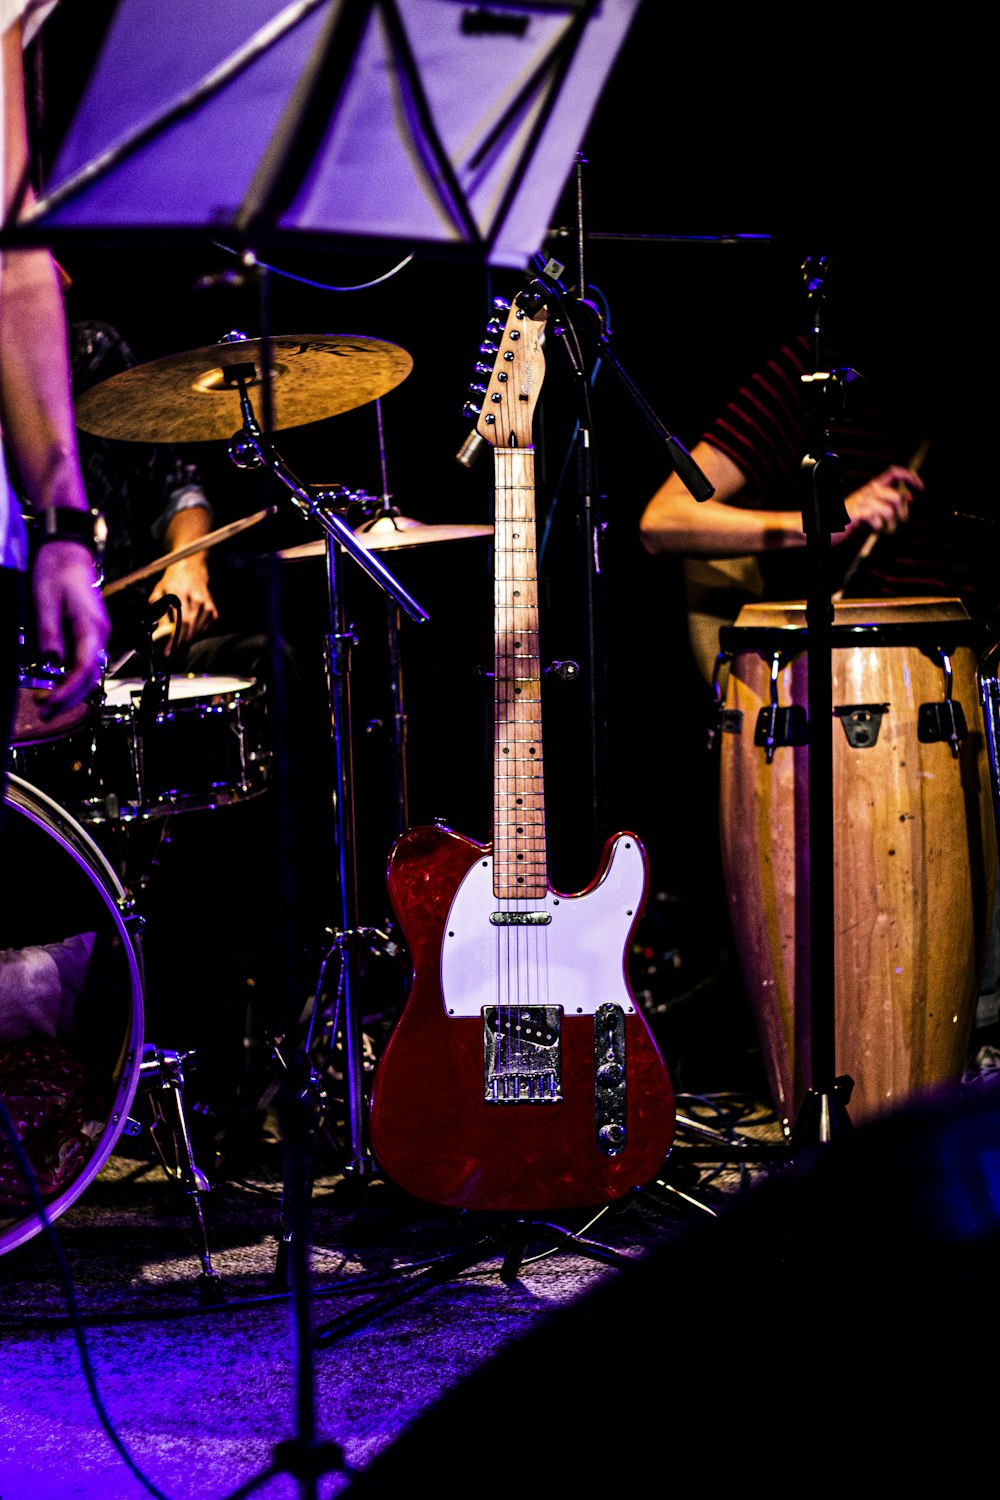 fotografia de close-up de guitarra elétrica vermelha e branca